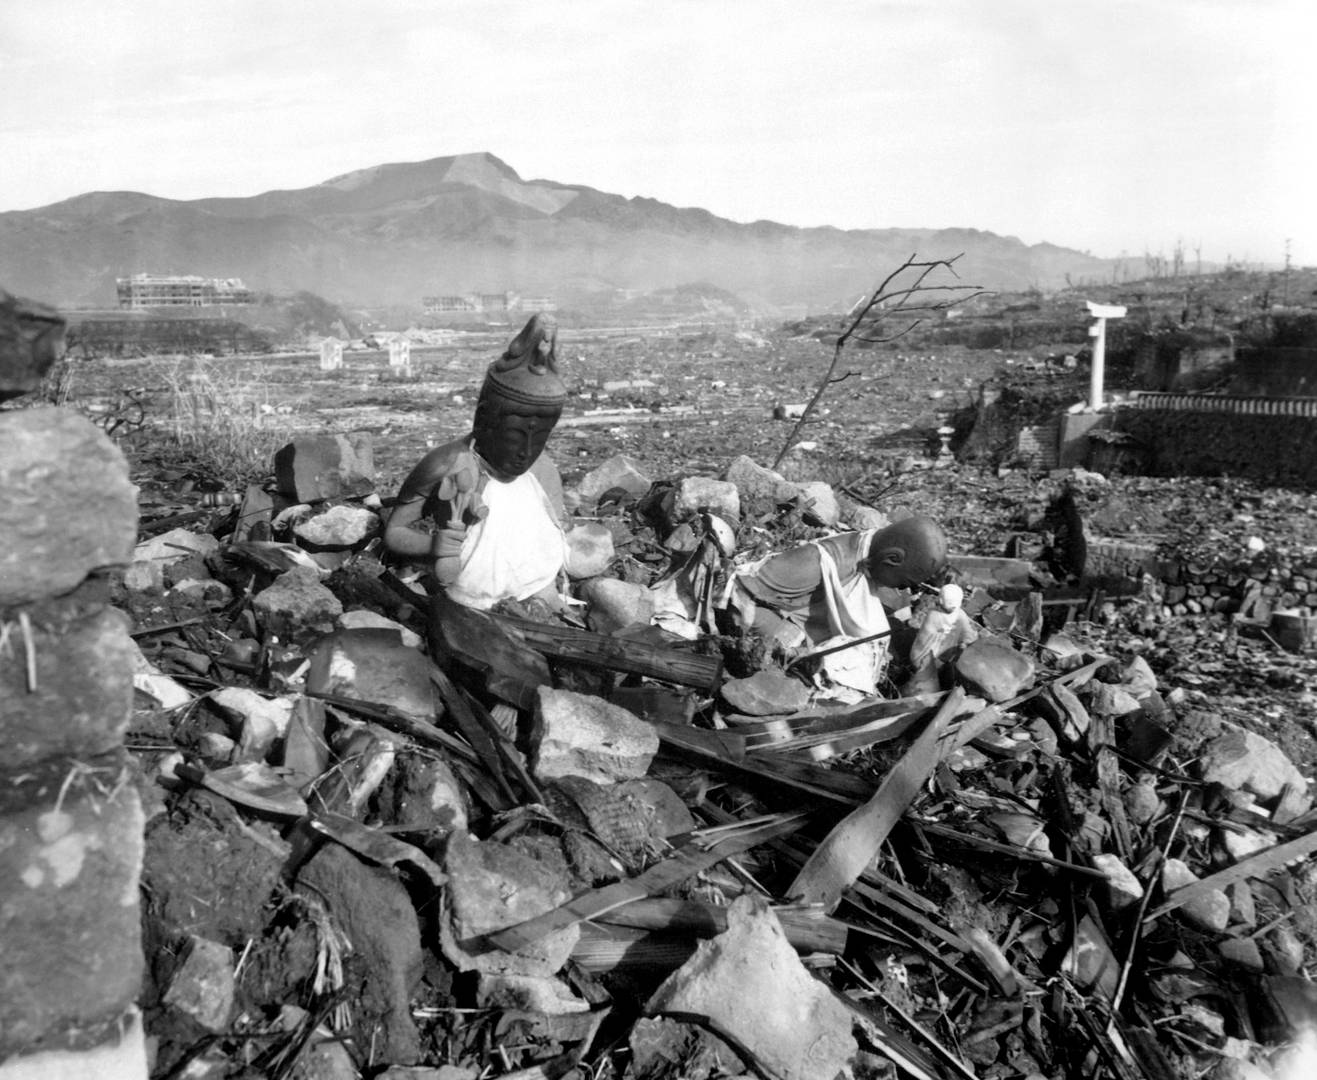 Фото разрушенного храма в Нагасаки, сделанное через 6 недель после бомбардировки. Нагасаки, Япония, 24 сентября 1945 года.